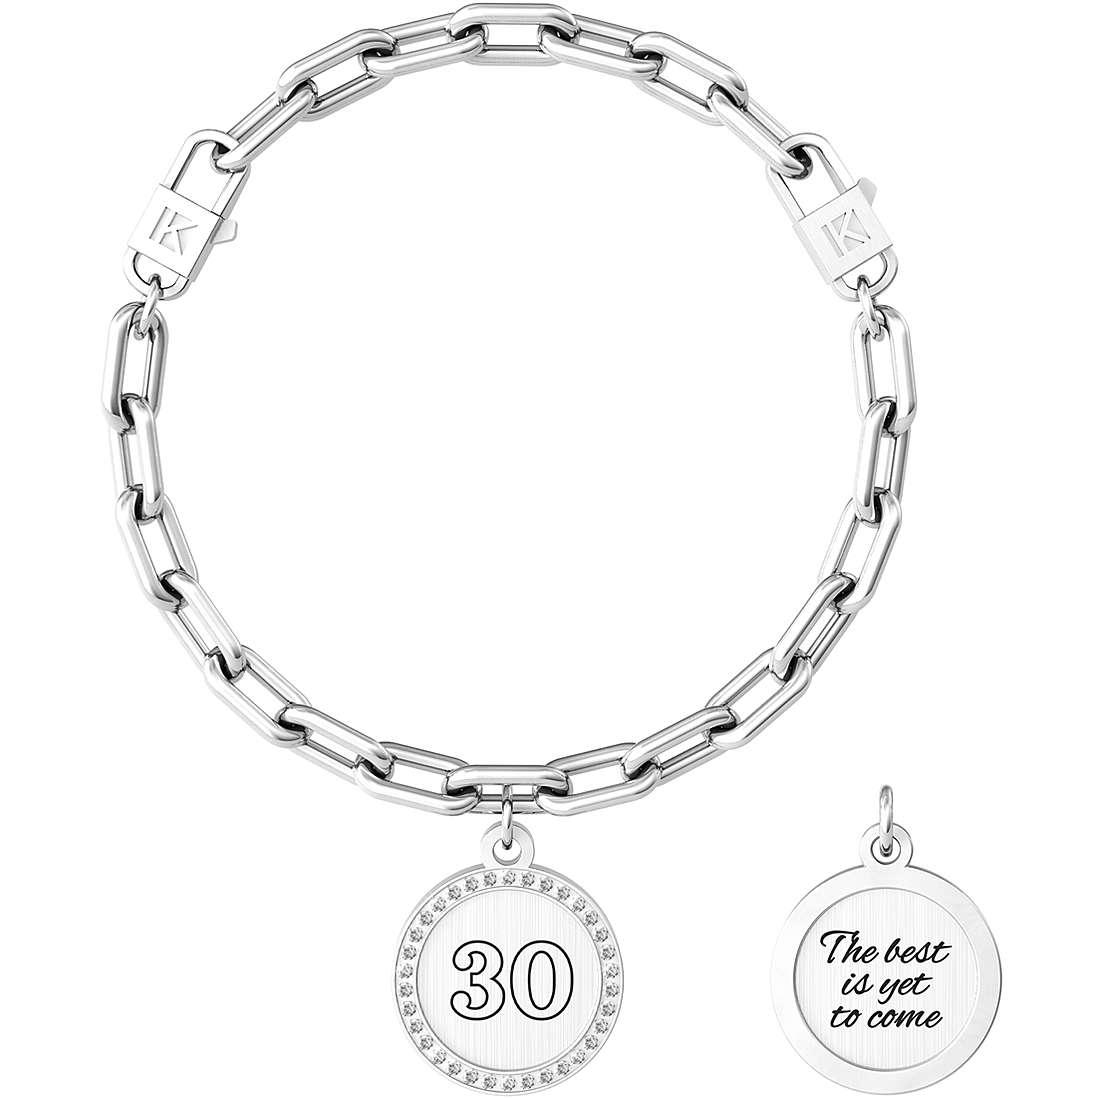 Bracelet Kidut pour femme Collection Moments spéciaux - 30 | LE MEILLEUR EST ENCORE À VENIR - 731951